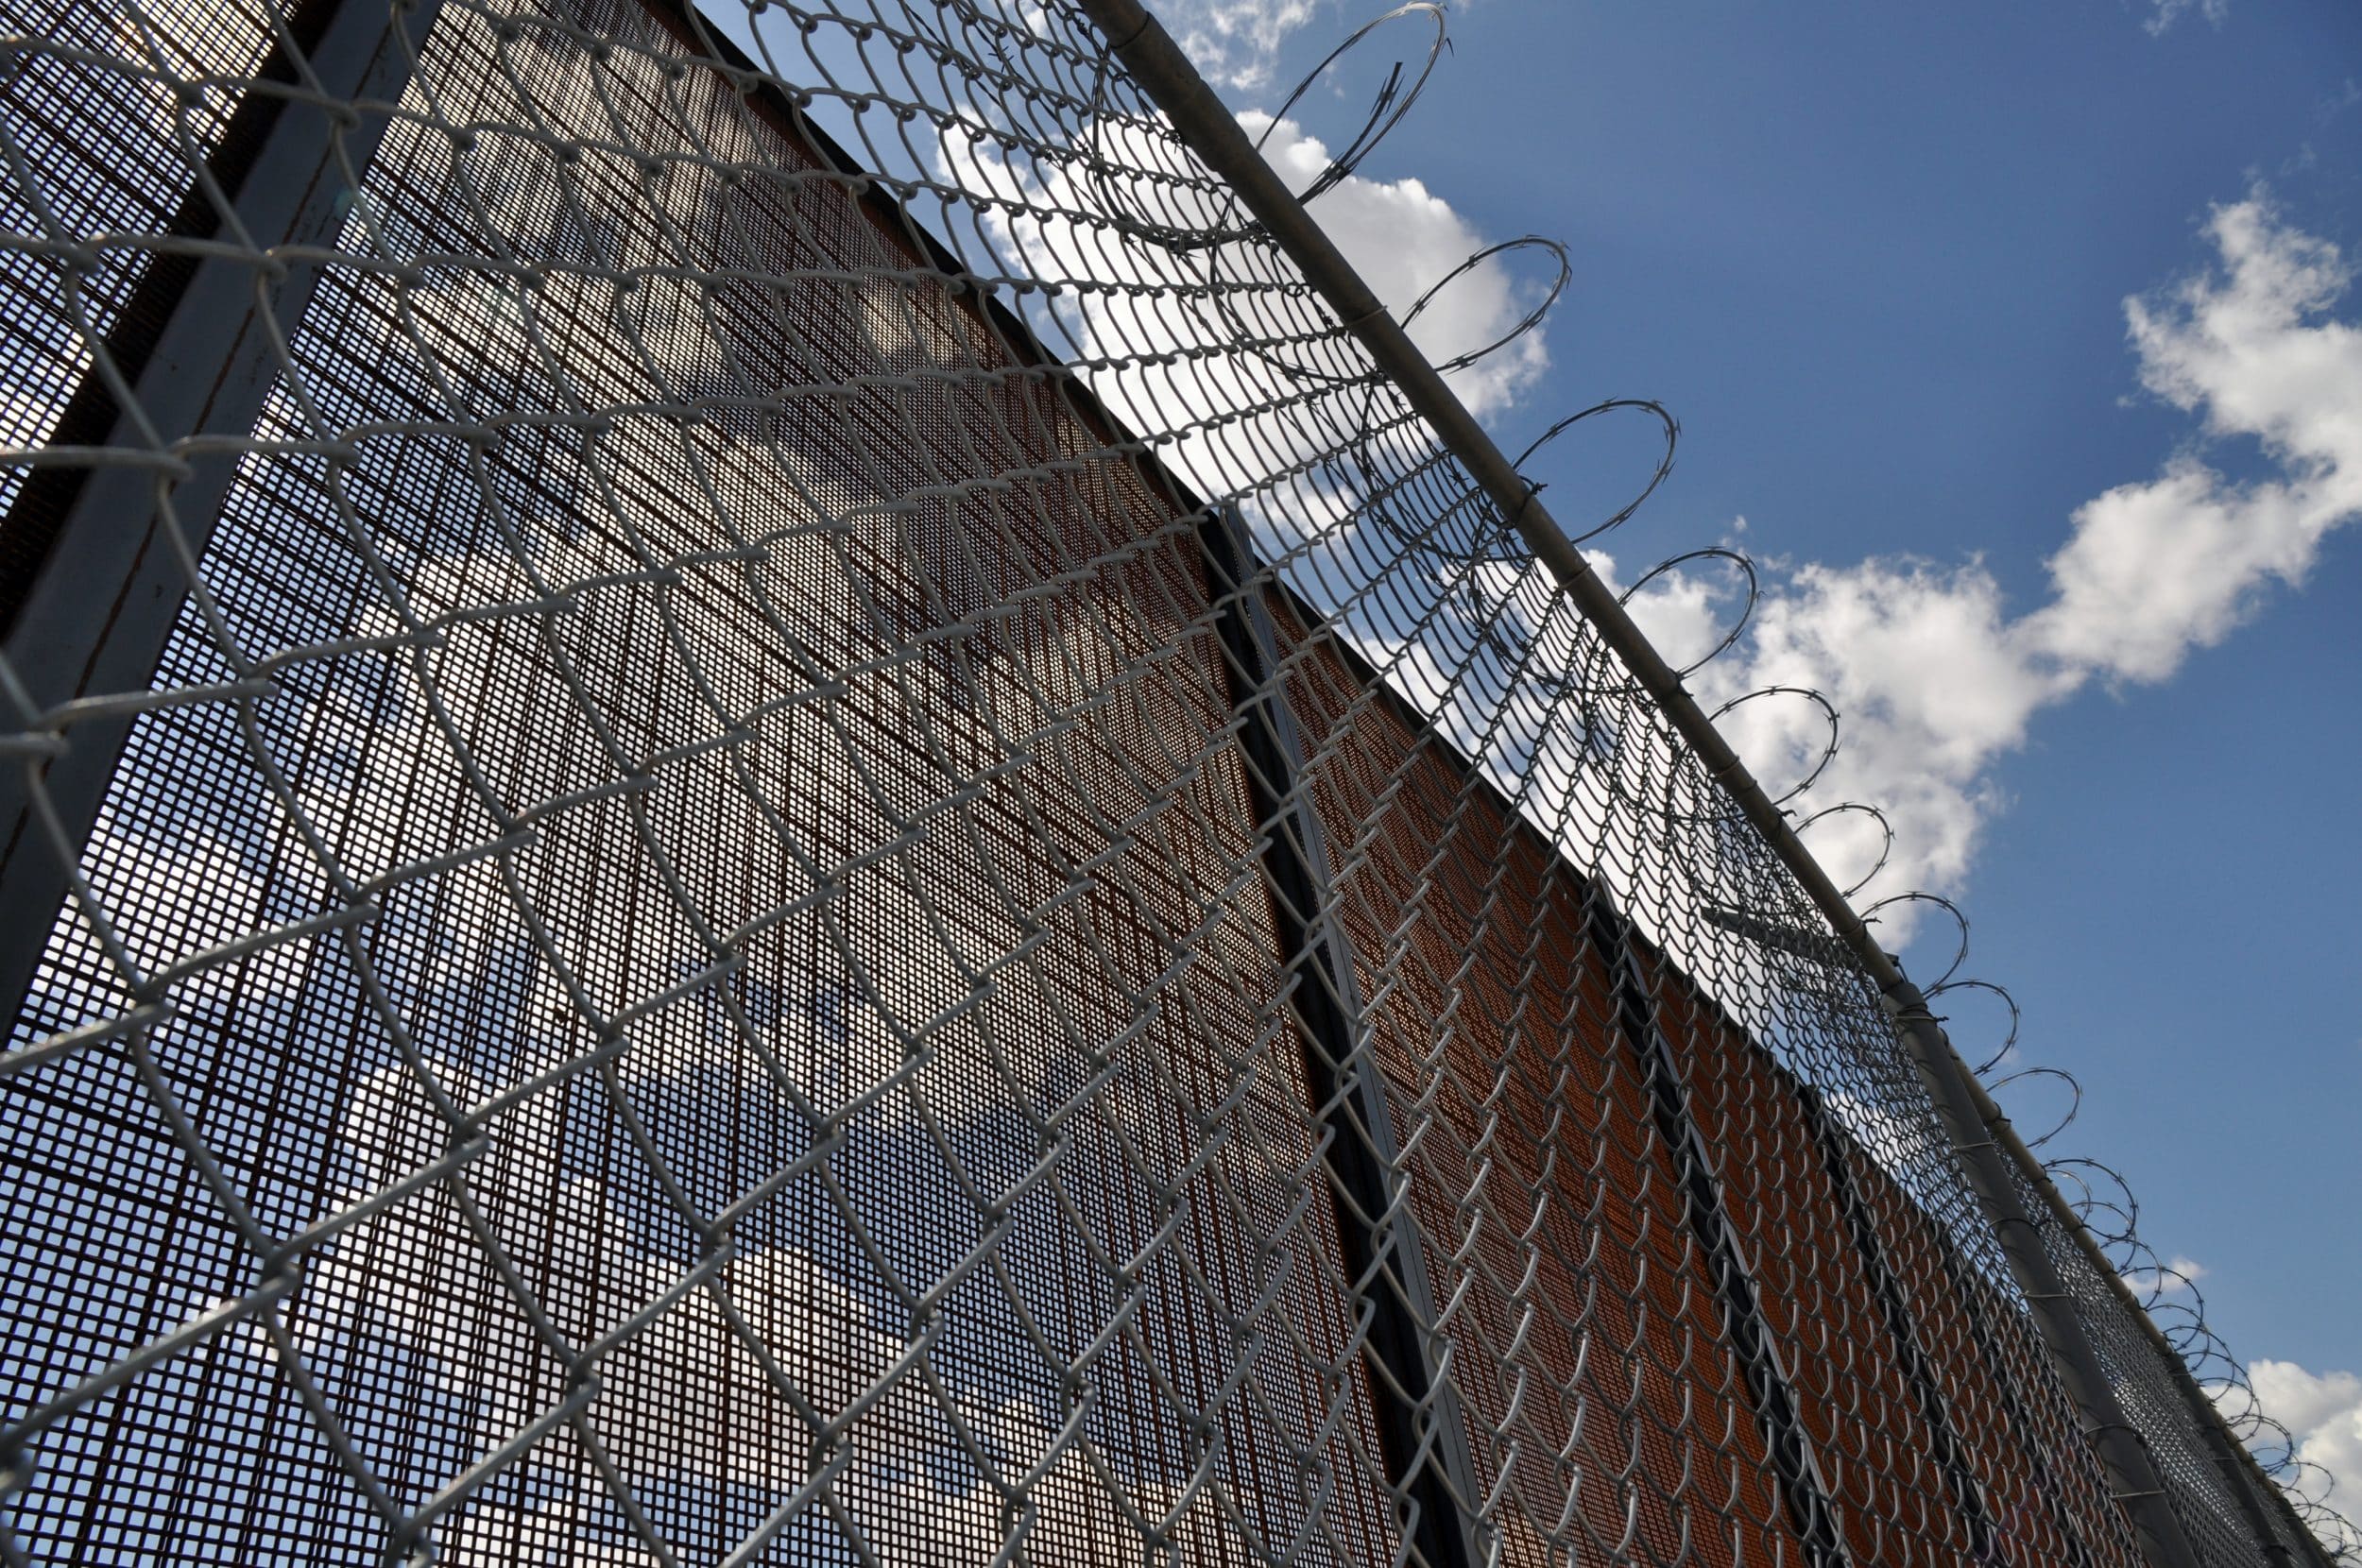 Колонки: Правда ли, что пограничная стена в Эль-Пасо остановила преступность в городе рис 2